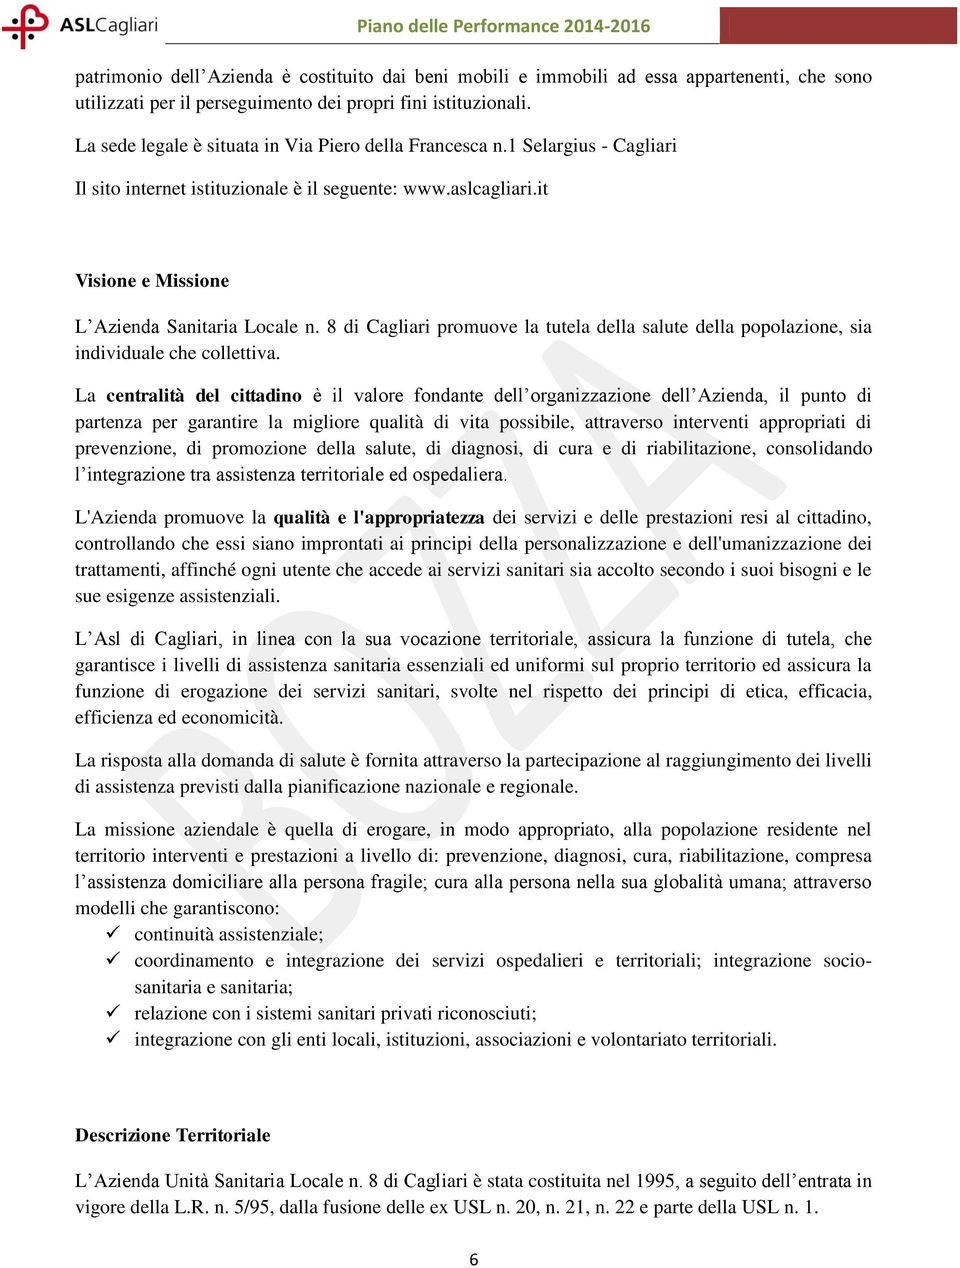 8 di Cagliari promuove la tutela della salute della popolazione, sia individuale che collettiva.